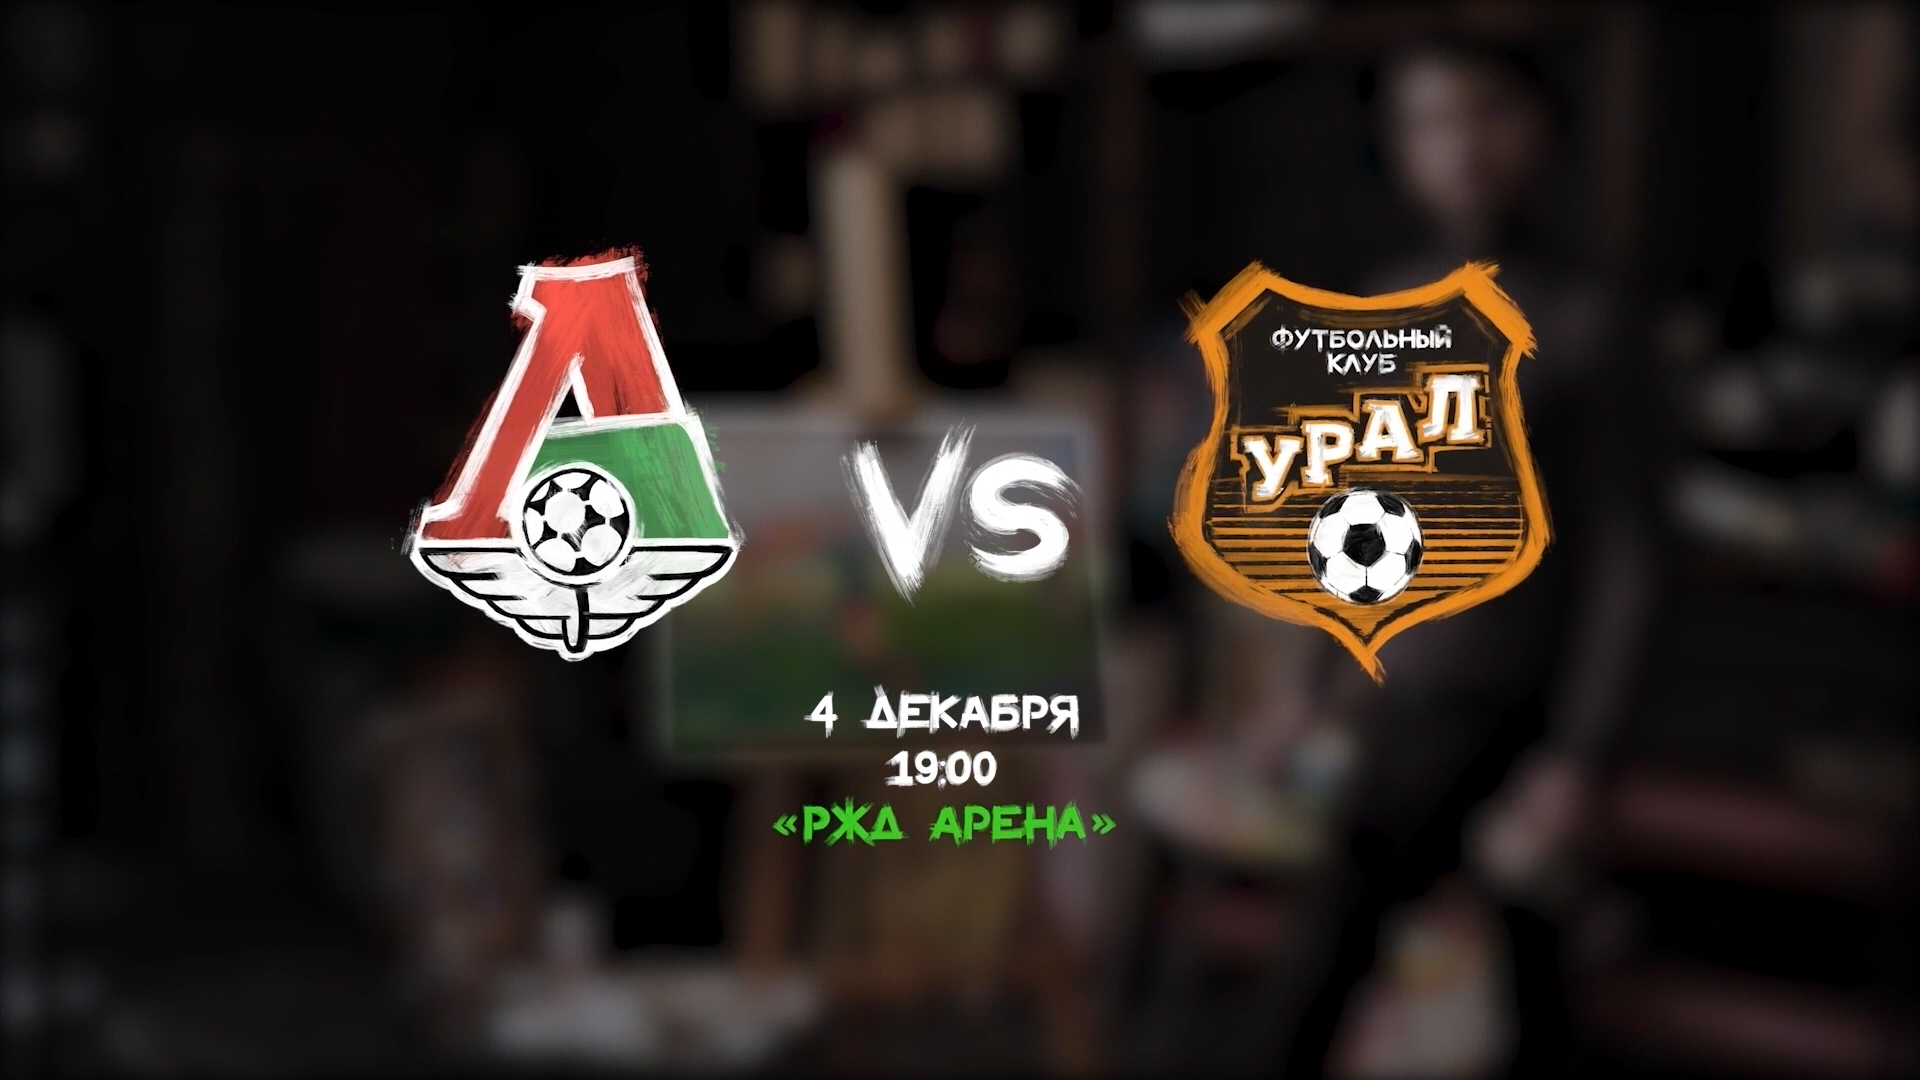 Lokomotiv vs Ural promo video // 04.12.2021